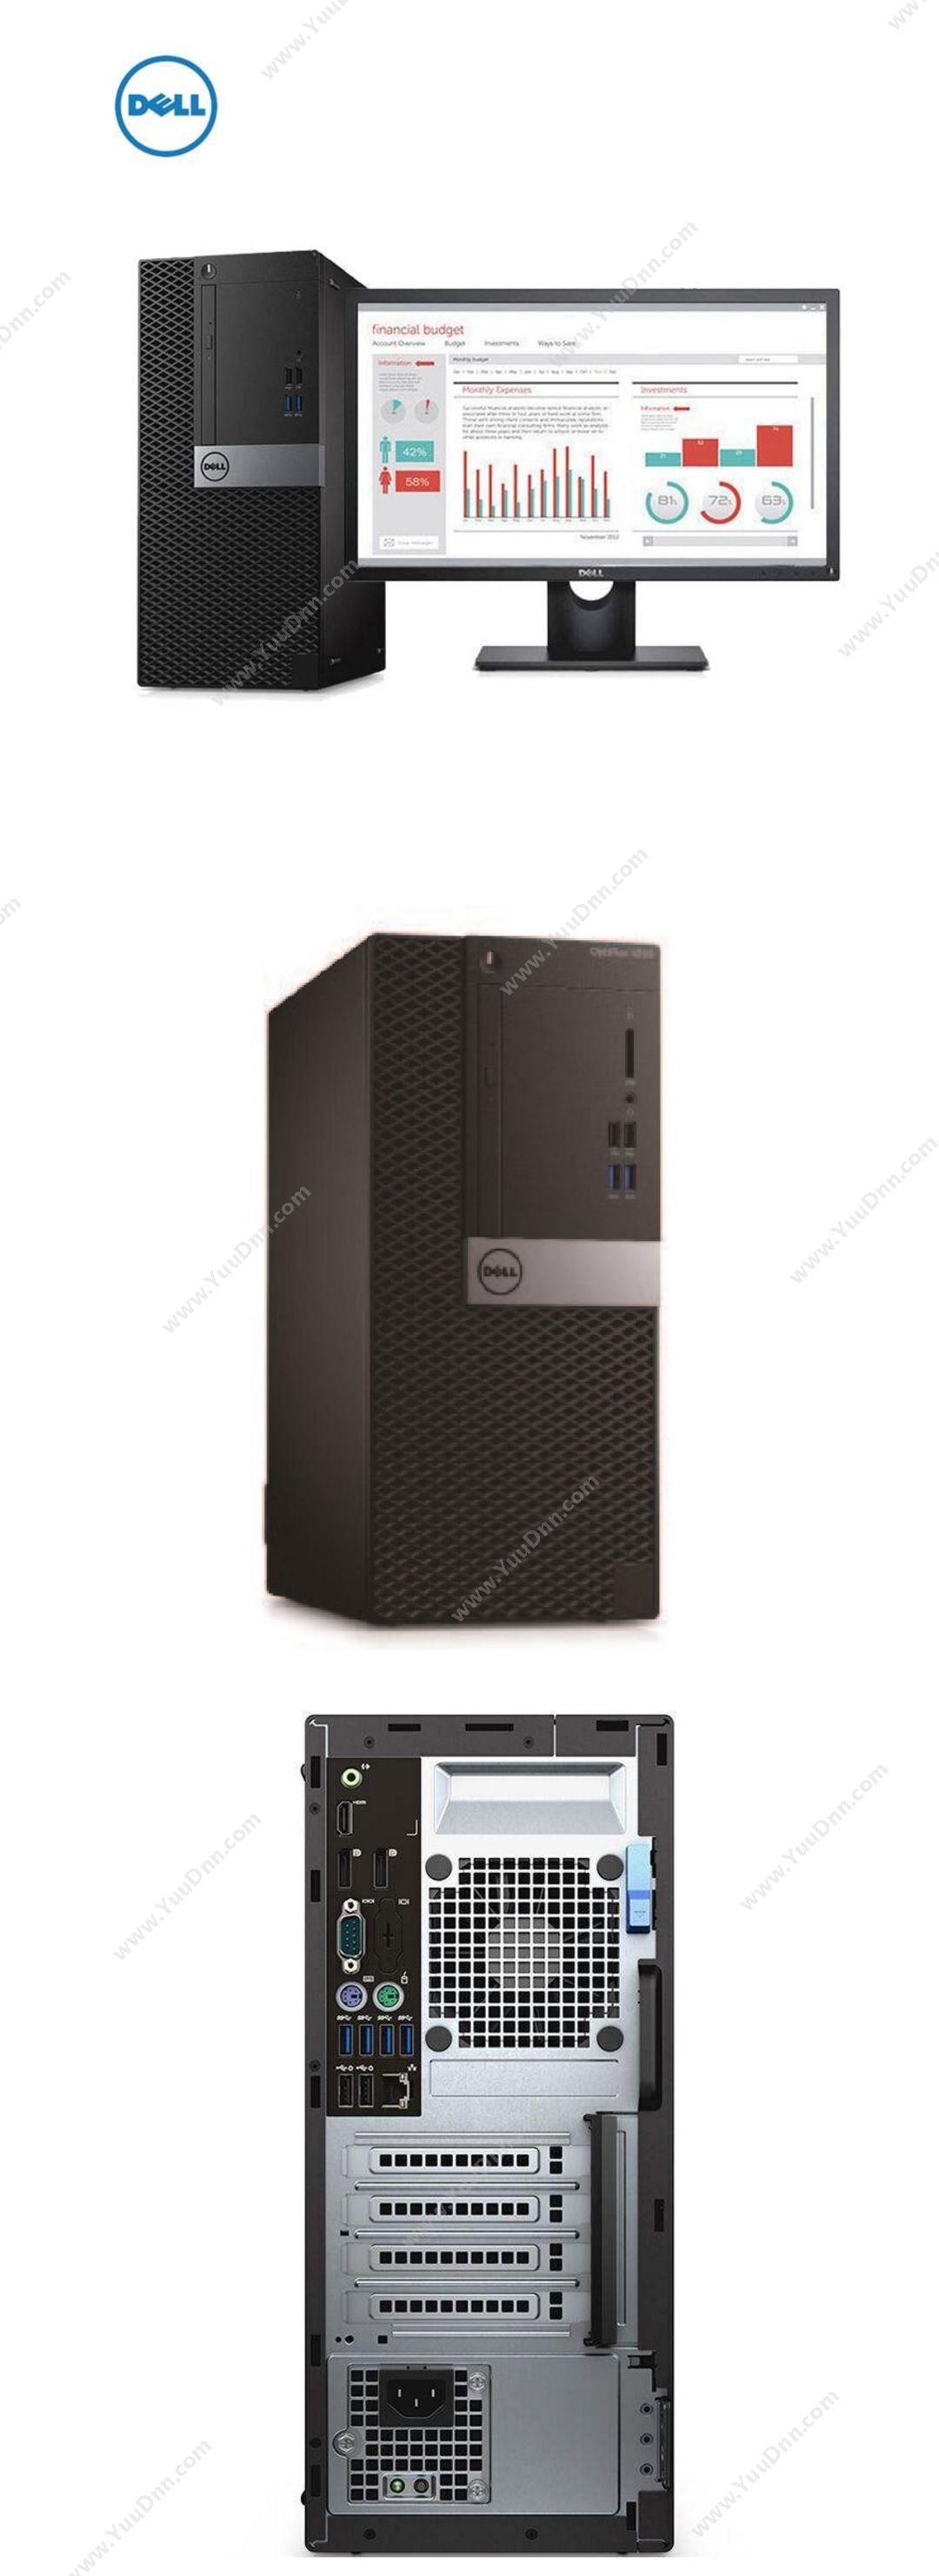 戴尔 Dell Tower 001598 台式机（i5-6500/4G/1T/集显/DVDRW/硬盘保护/23.8显示器） 台式电脑套机